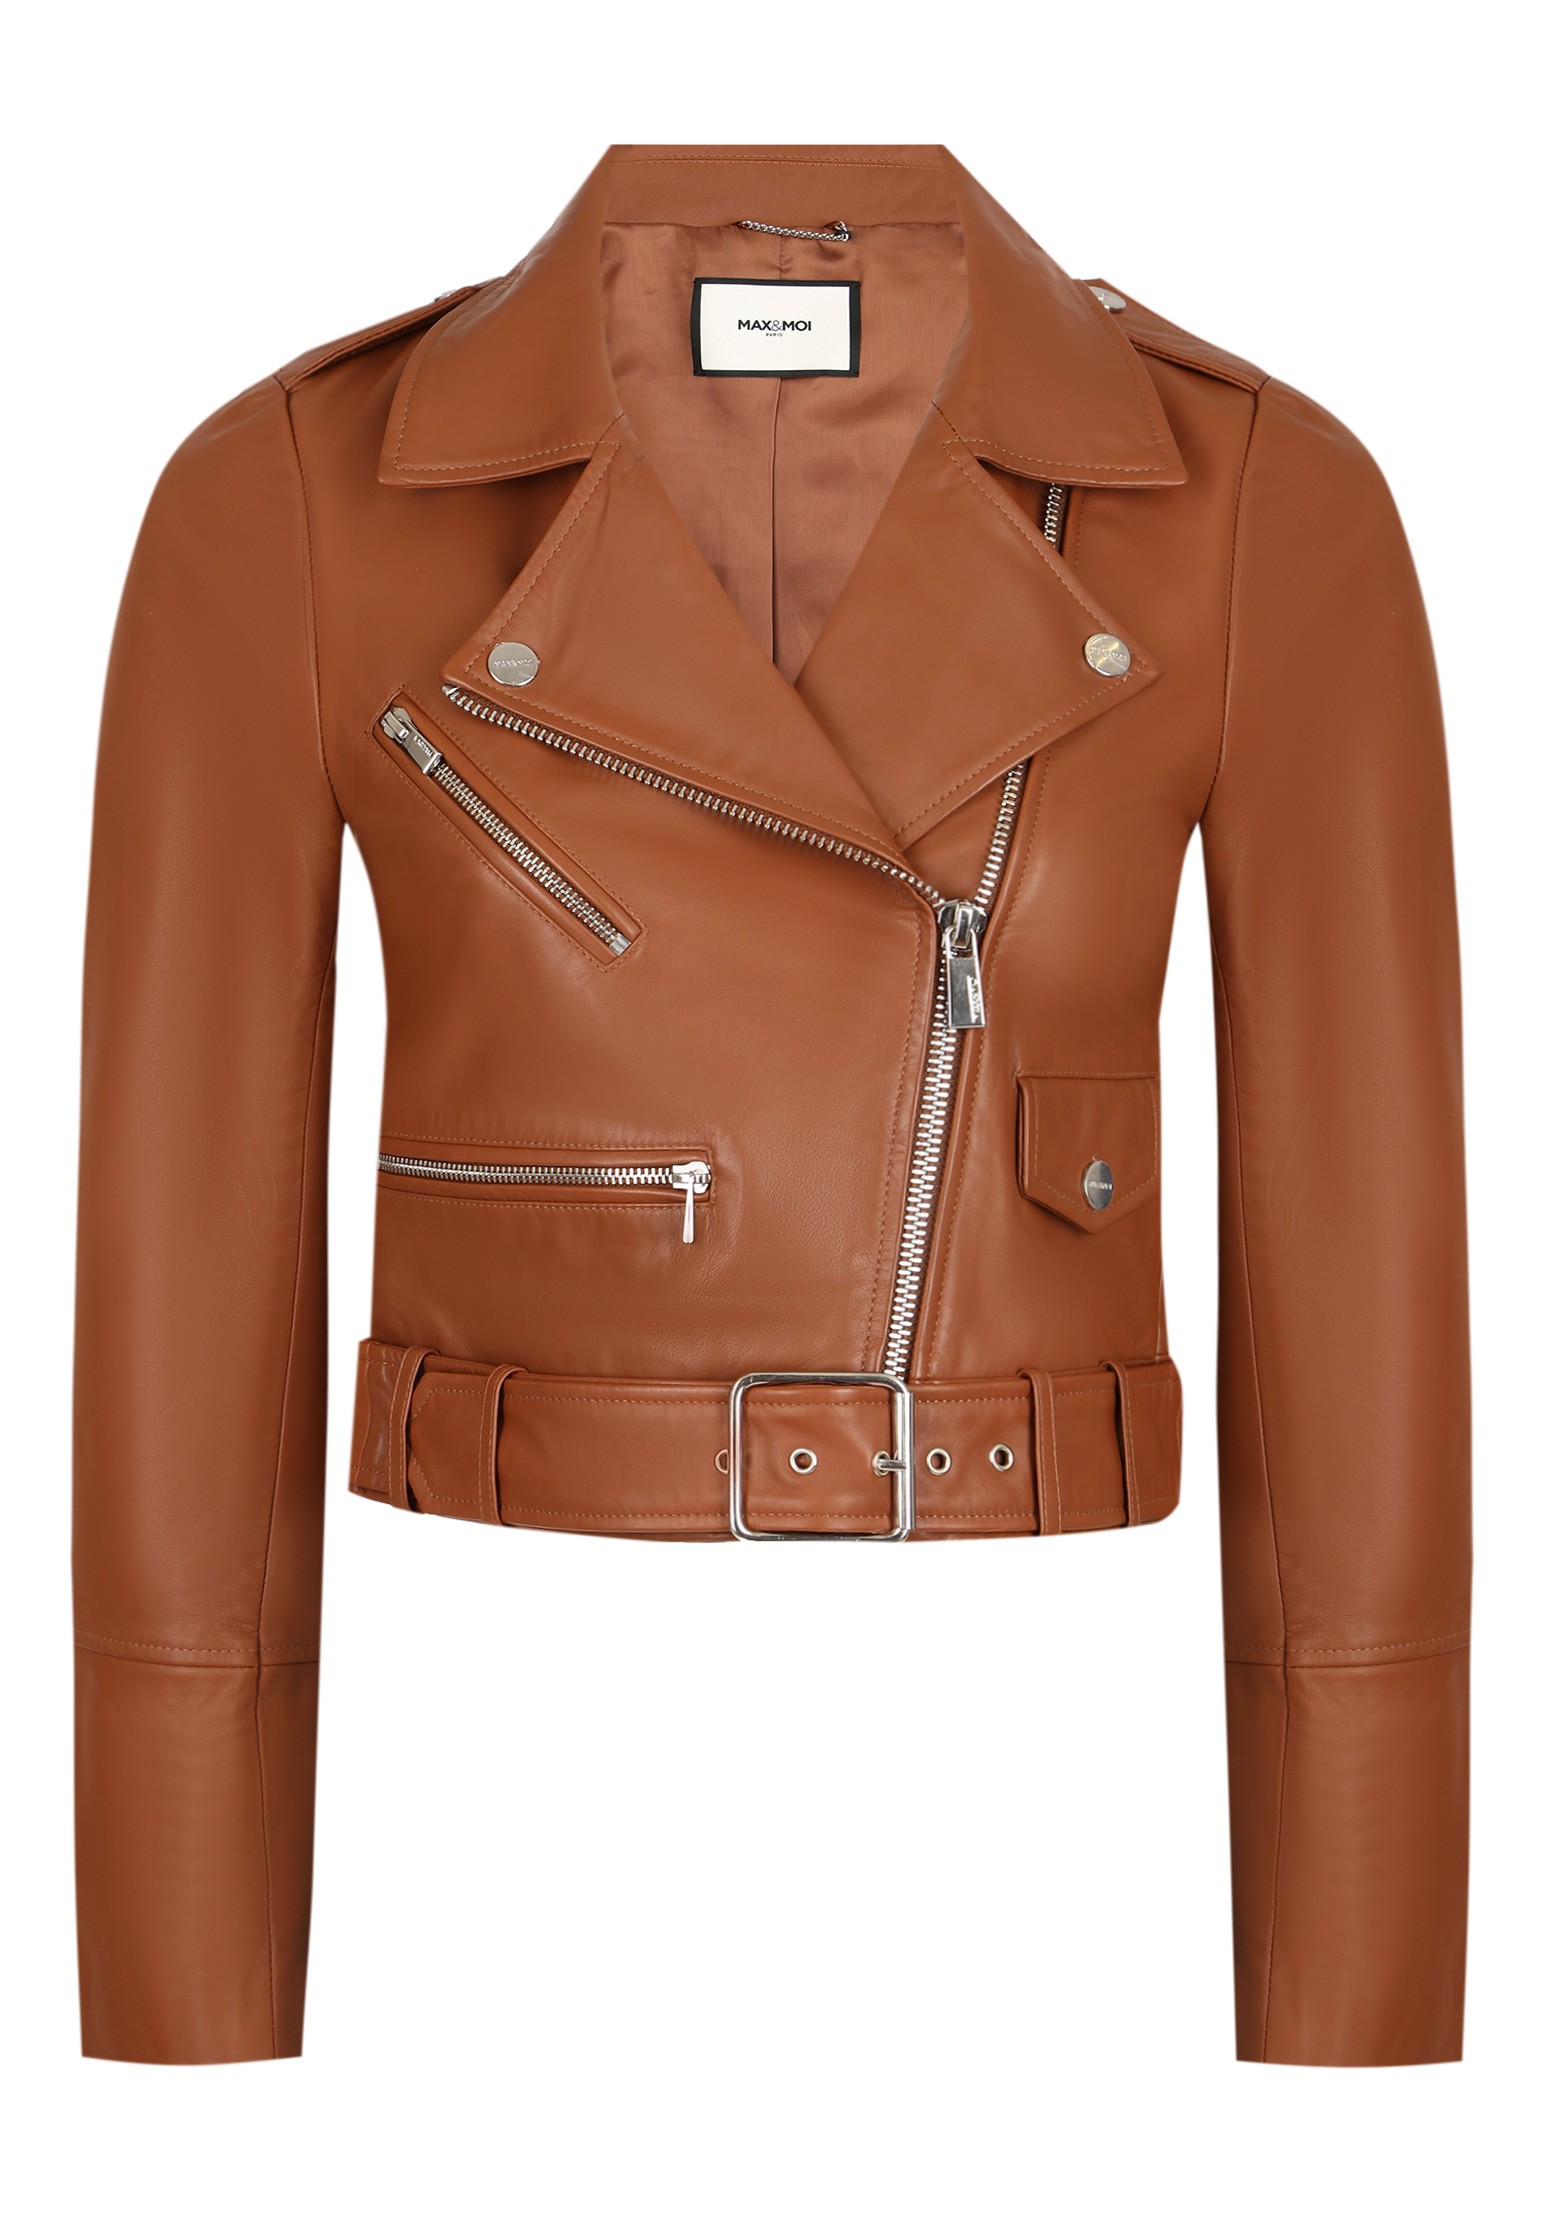 Кожаная куртка женская MAX & MOI 128063 коричневая 34 FR